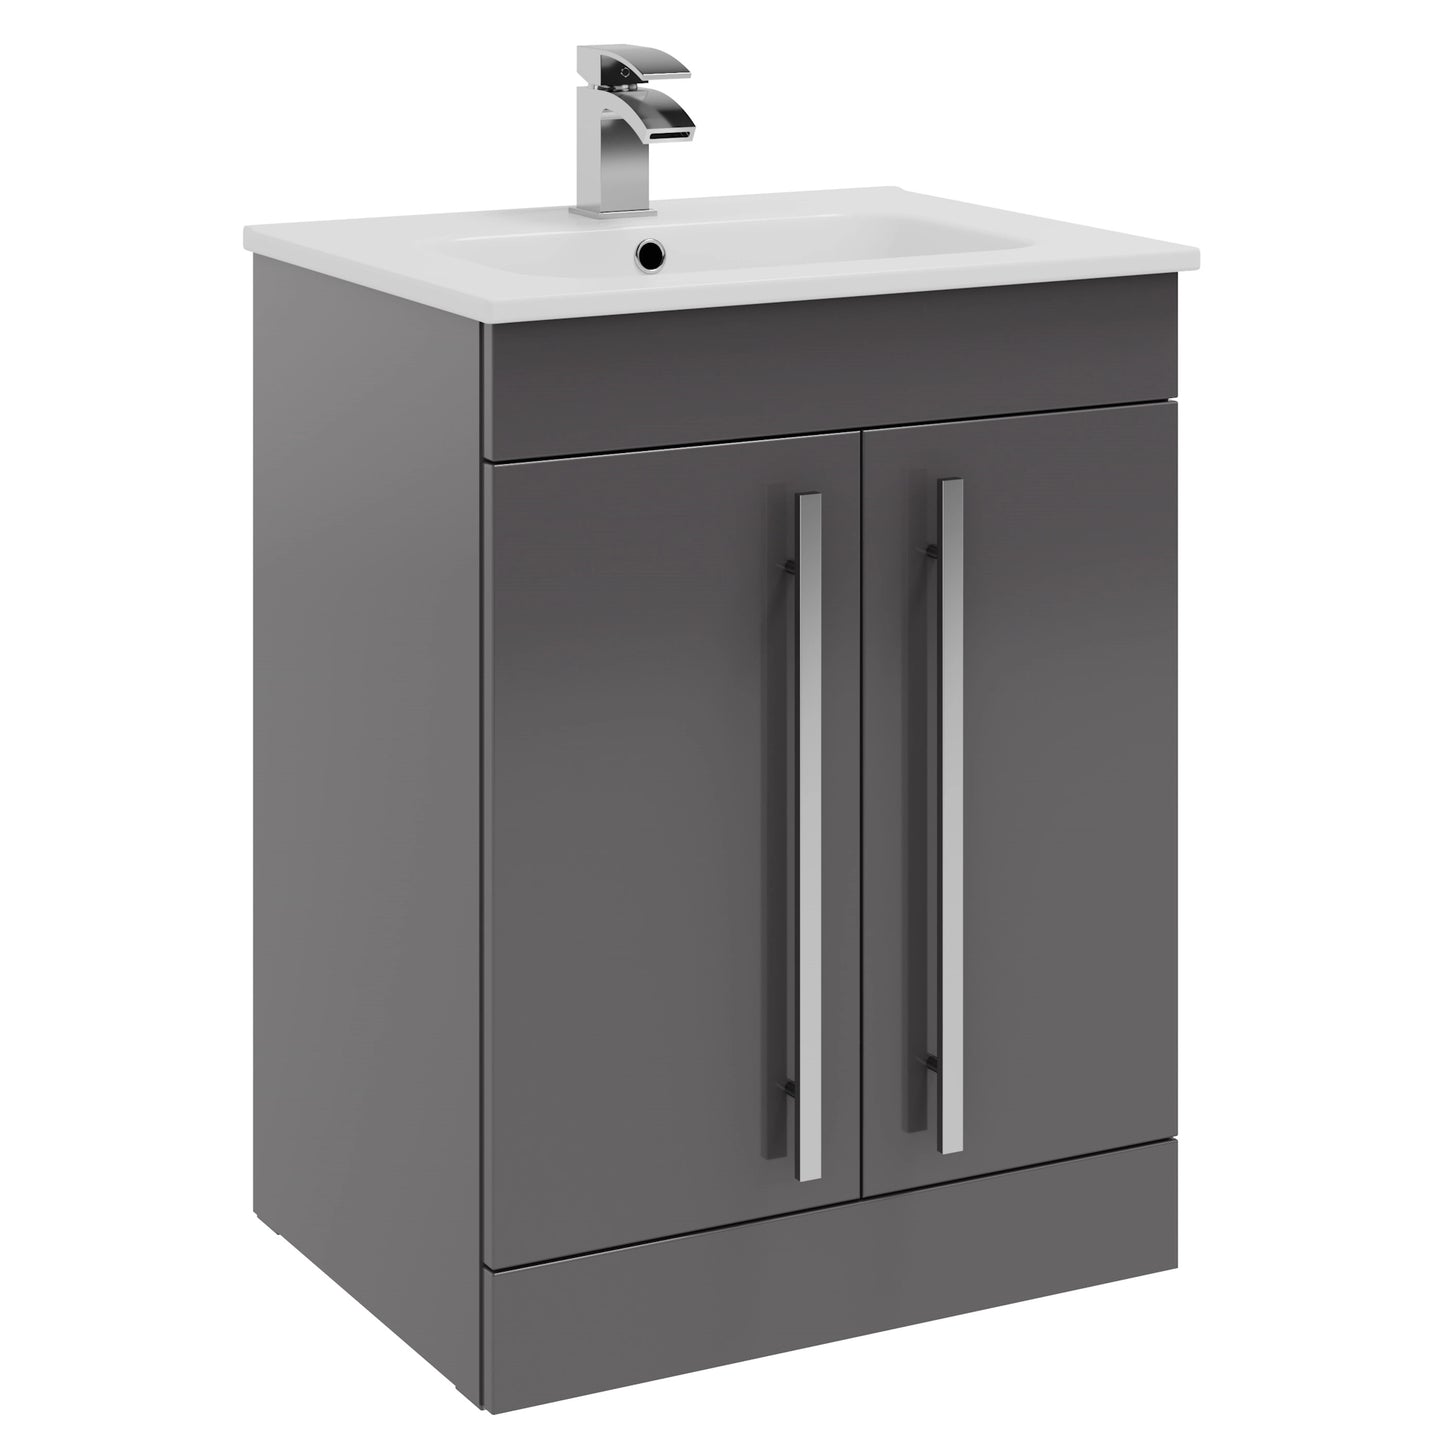 Purity Kartell Floor Standing Two Door 600mm Basin Sink Vanity Unit